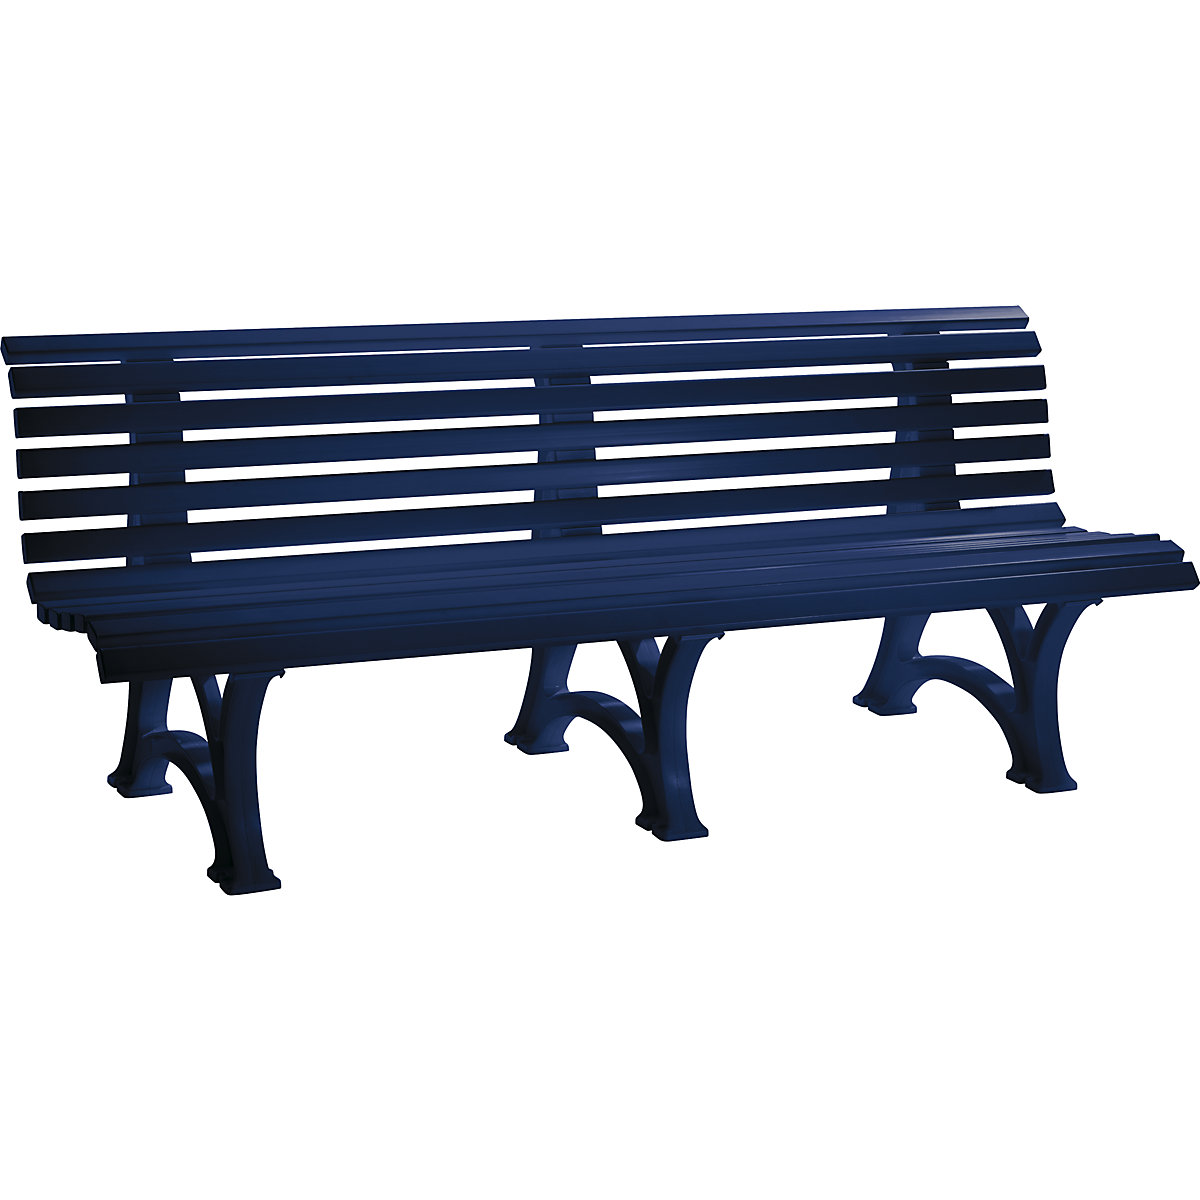 Parková lavička z plastu, s 13 lištami, šířka 2000 mm, ocelově modrá-11